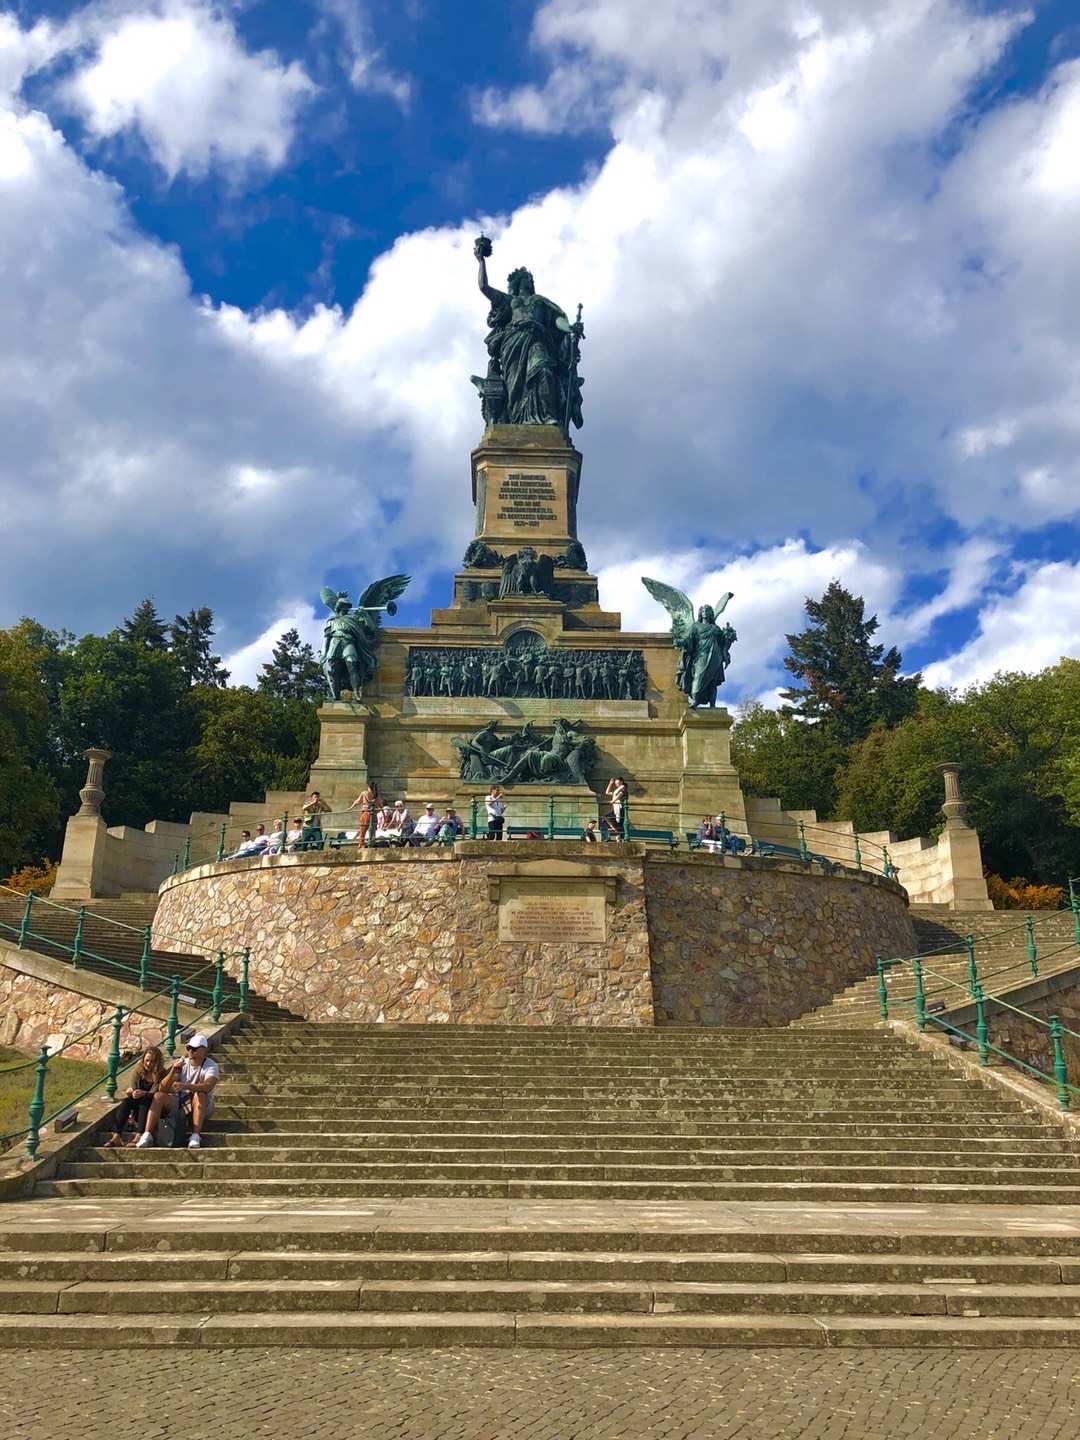 尼德瓦尔德纪念碑：又称“帝国纪念碑”，坐落在鲁德斯海姆西北方葡萄园的山坡上，纪念1871年德意志帝国